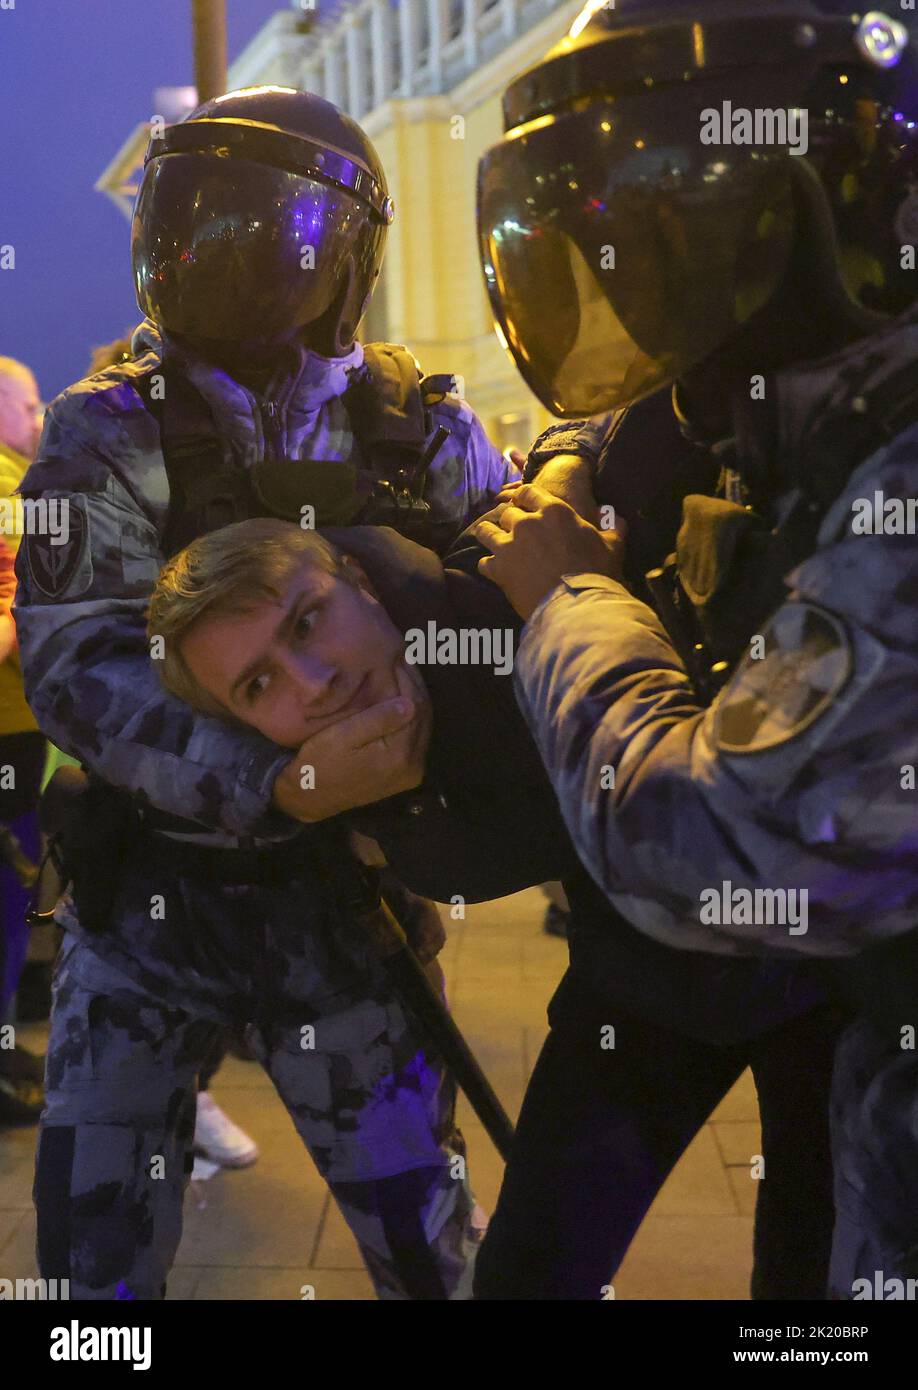 Russische Polizisten verhaften einen Mann während einer nicht sanktionierten Kundgebung, nachdem Oppositionelle zu Straßenprotesten gegen die Mobilisierung von Reservisten aufgerufen hatten, die von Präsident Wladimir Putin angeordnet wurden, in Moskau, Russland, am 21. September 2022. REUTERS/REUTERS-FOTOGRAF Stockfoto